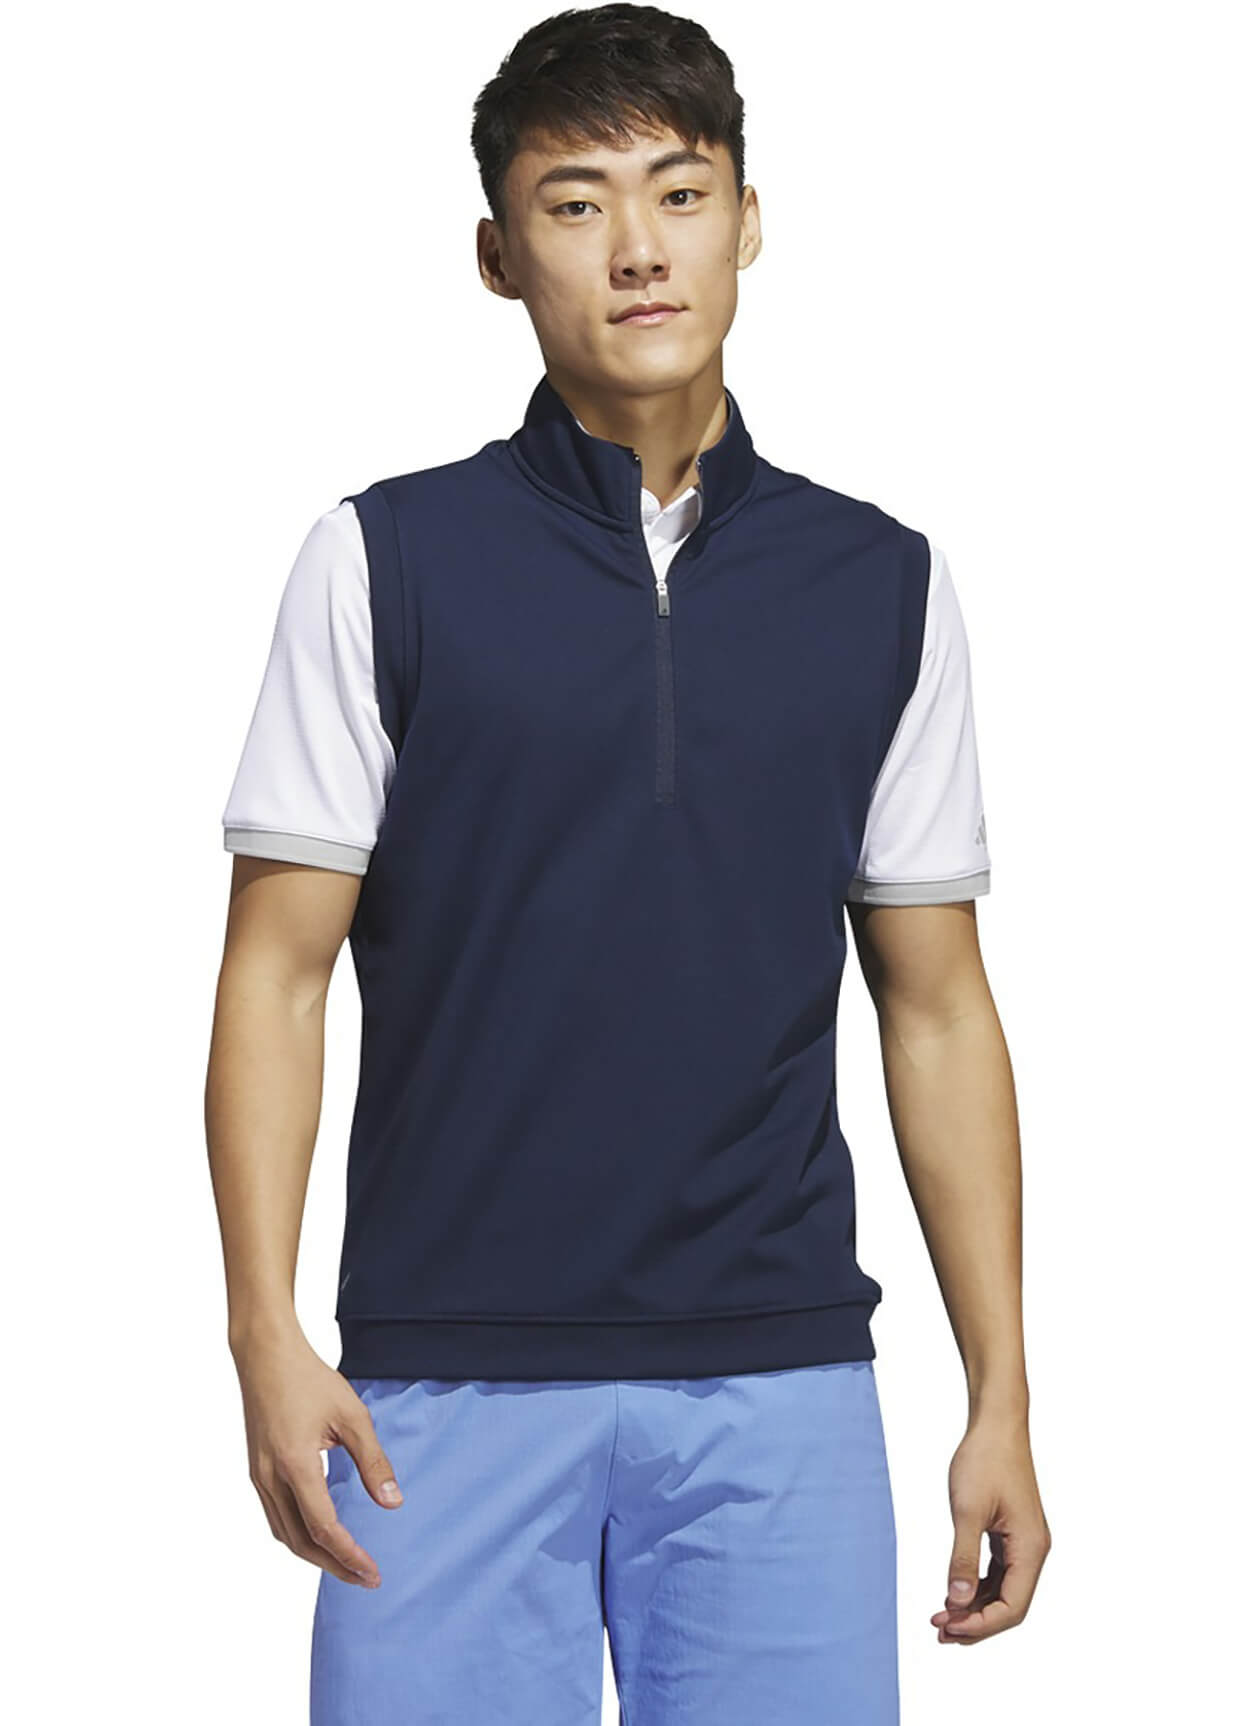 Adidas AD131 - Golf Men's Elevated Quarter-Zip Vest